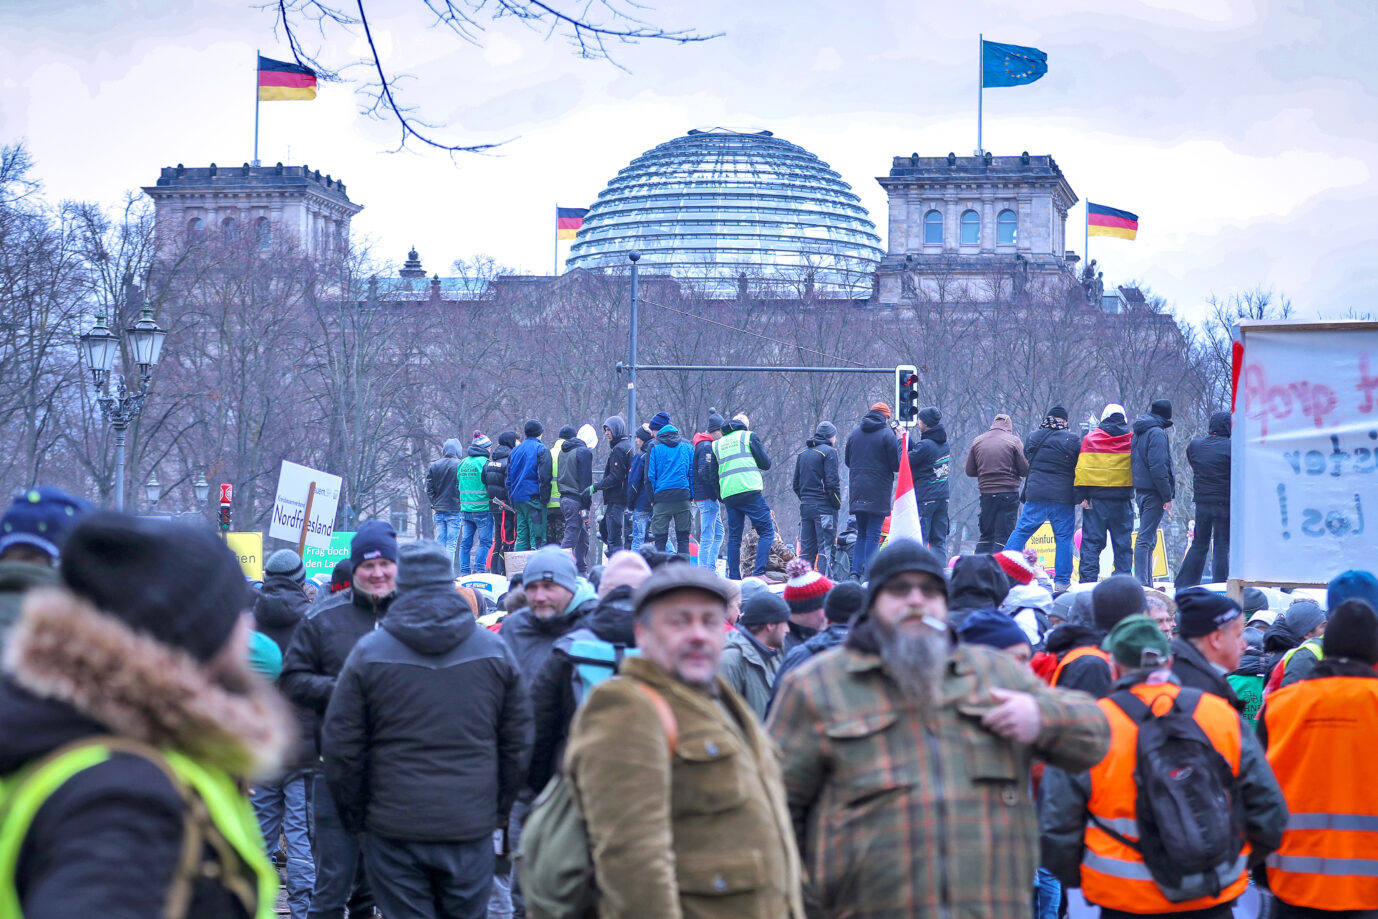 Bauern, Handwerker und Fernfahrer demonstrieren vor dem Bundestag in Berlin: Die Politik steht unter Druck, eine Lösung für die Betroffenen zu finden.